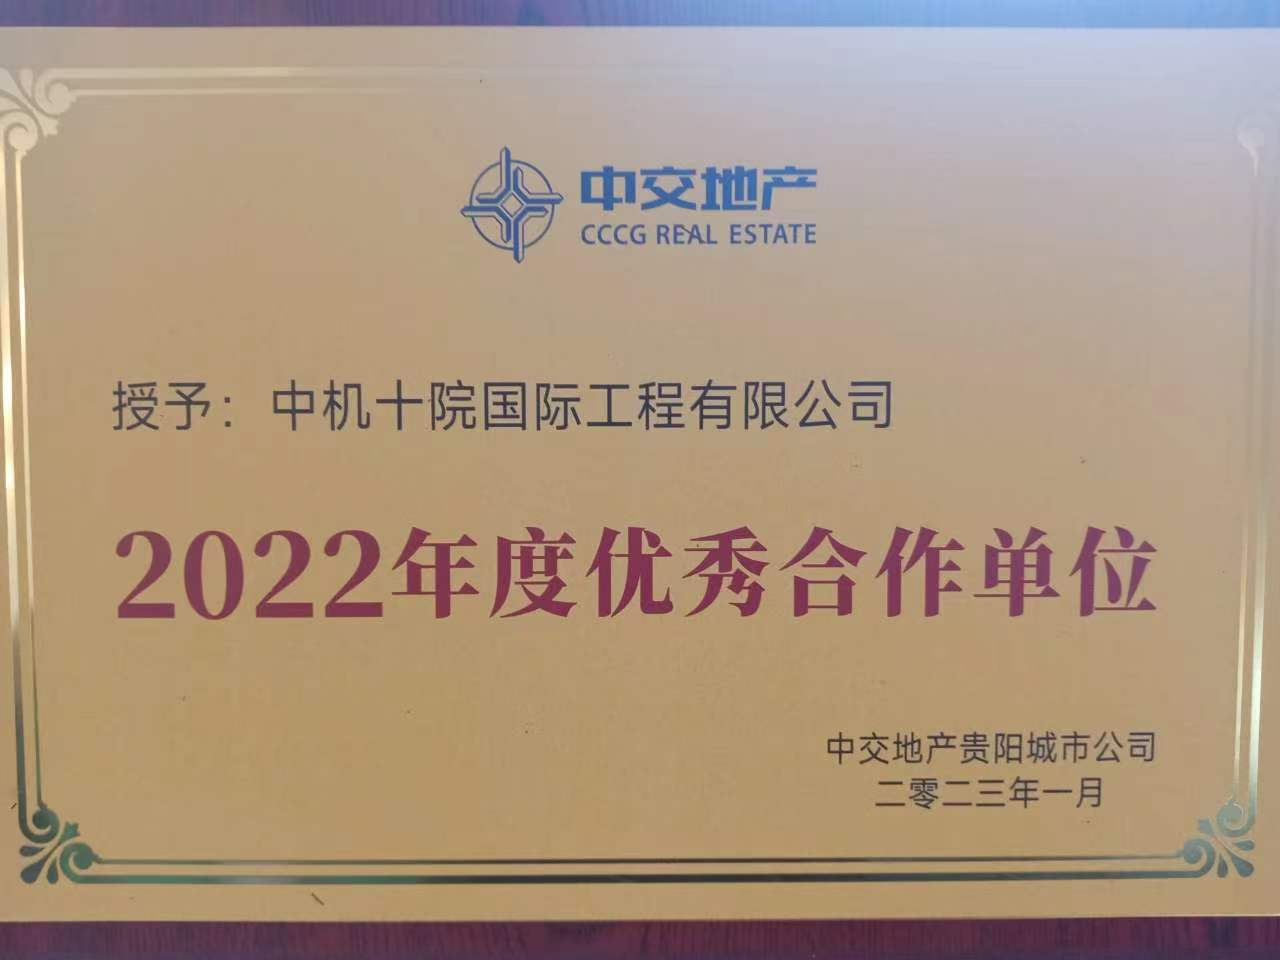 公司荣获中交地产《2022年度优秀合作单位》称号